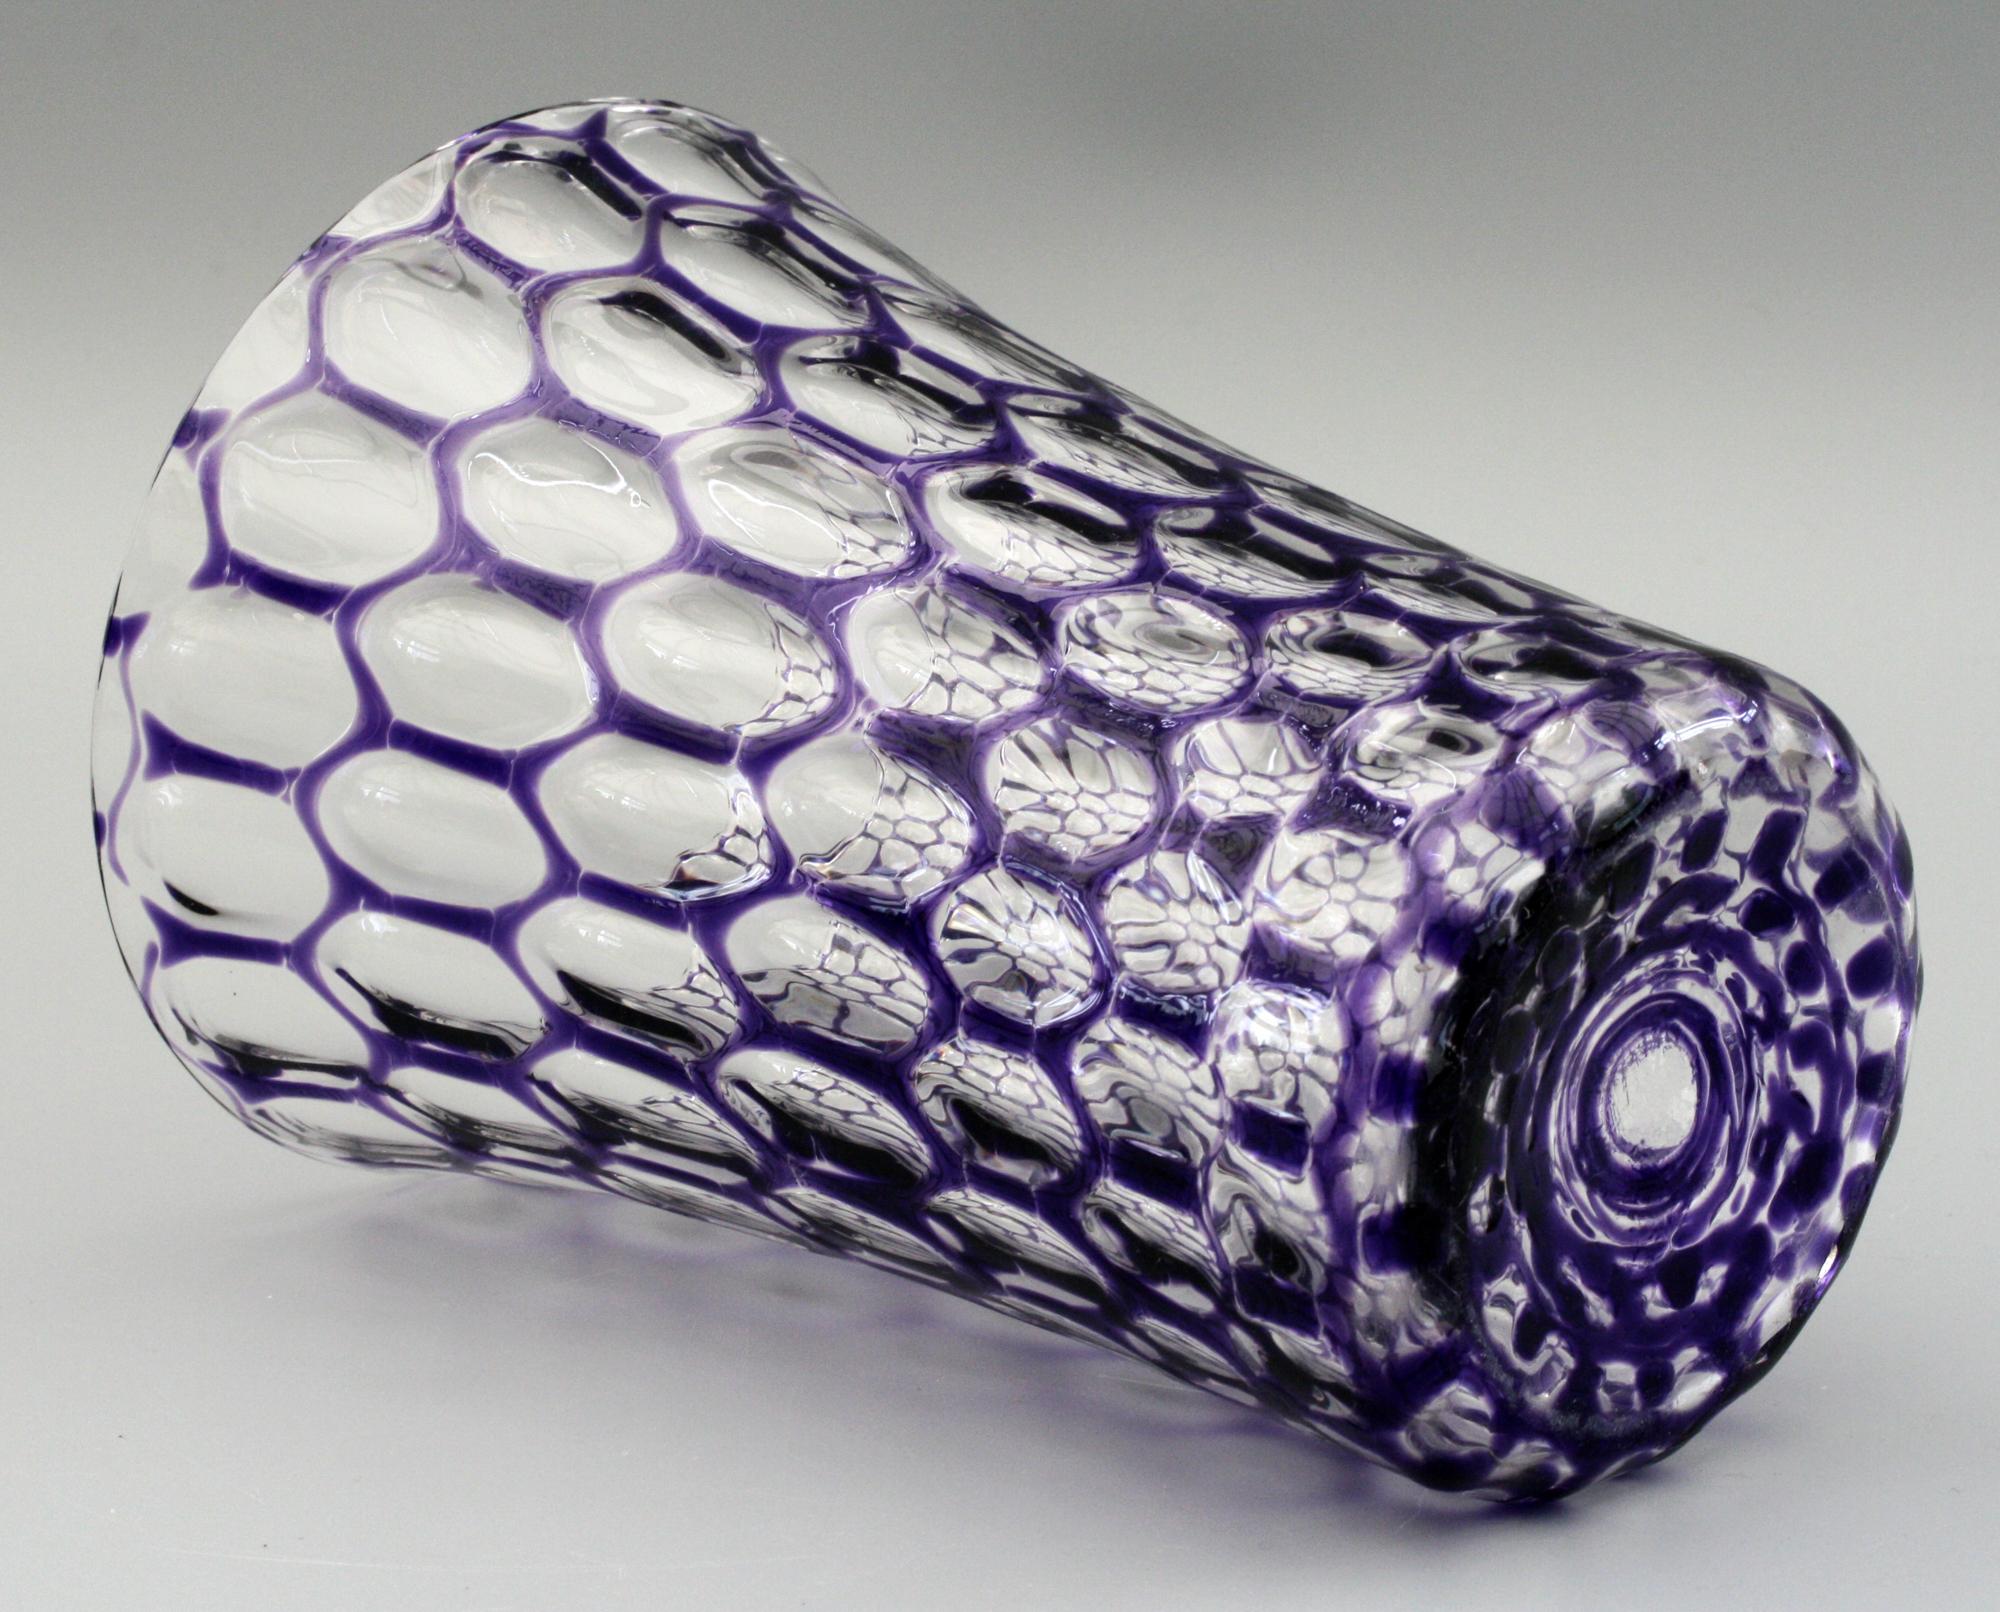 Un exceptionnel vase ancien en verre d'art optique à reflets violets datant probablement de la fin du 19e siècle et attribué à Stevens & Williams. Ce vase en forme de seau, d'une qualité exceptionnelle, a un sommet légèrement évasé avec un